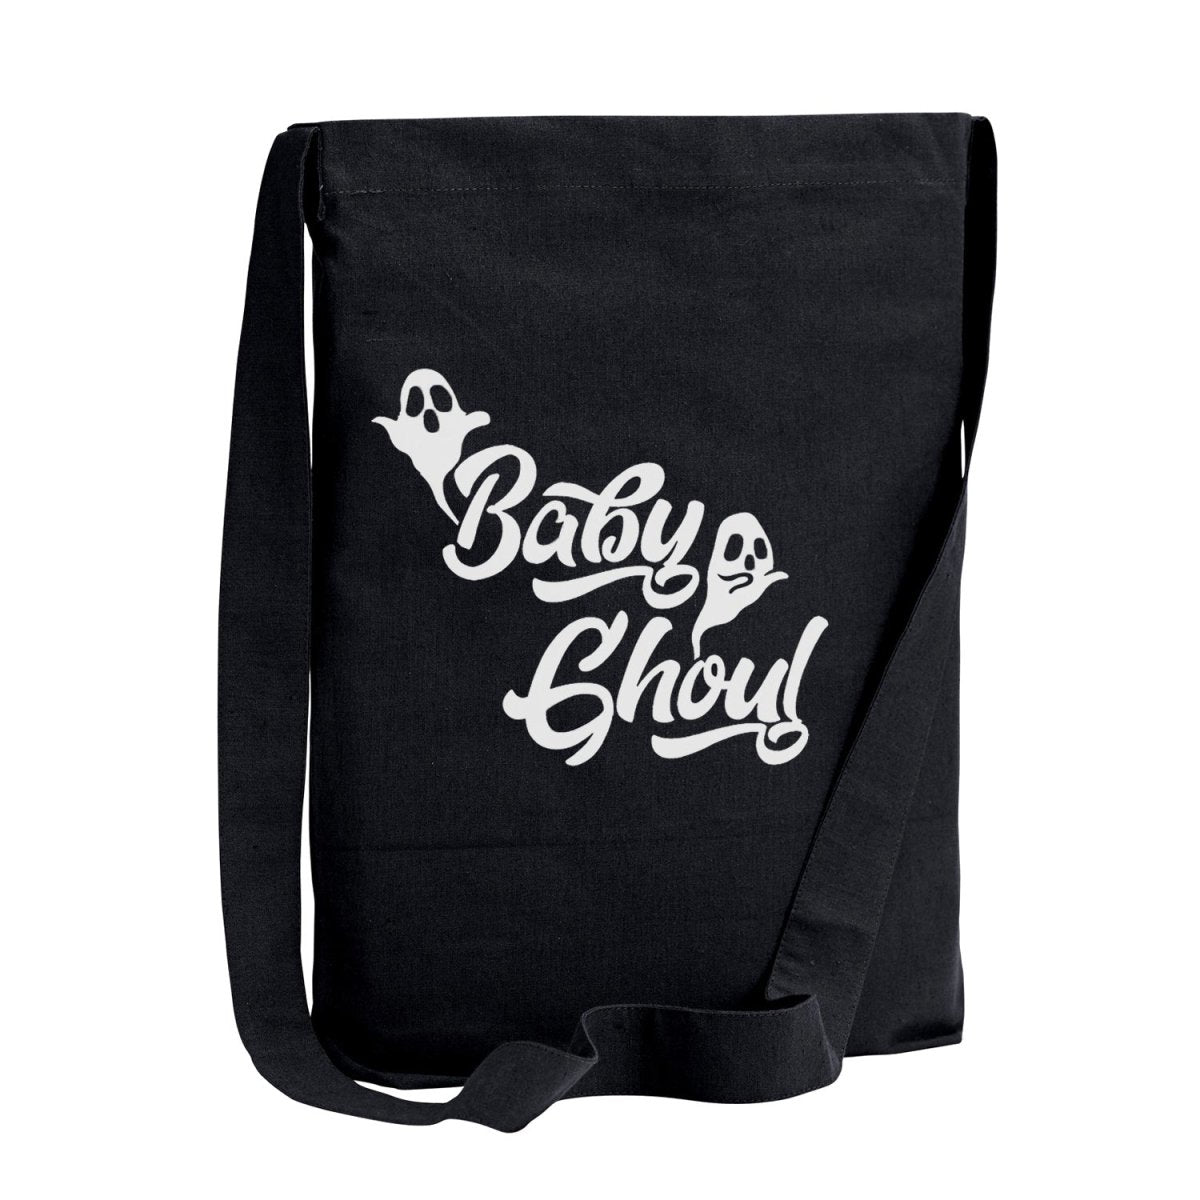 Bebe Black Tote Bag Purse Handbag